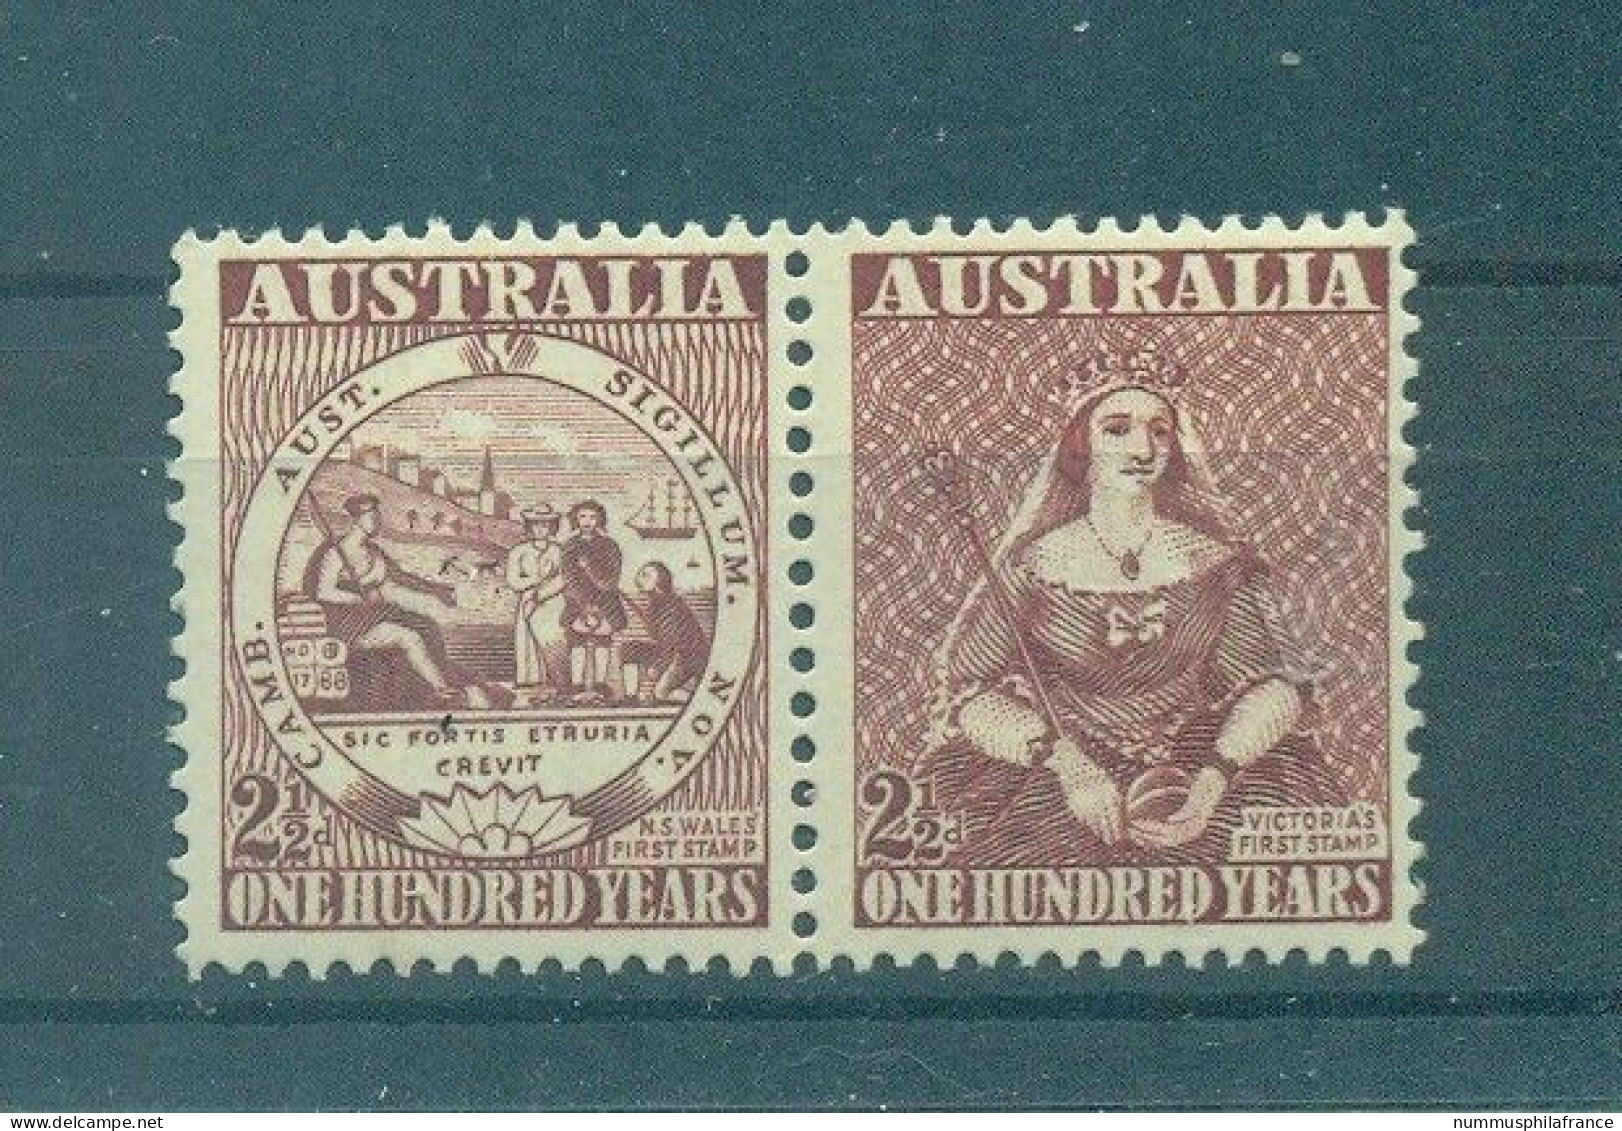 Australie 1950 - Y & T N. 175/76 - Timbre Australien (Michel N. 207/08) - Neufs